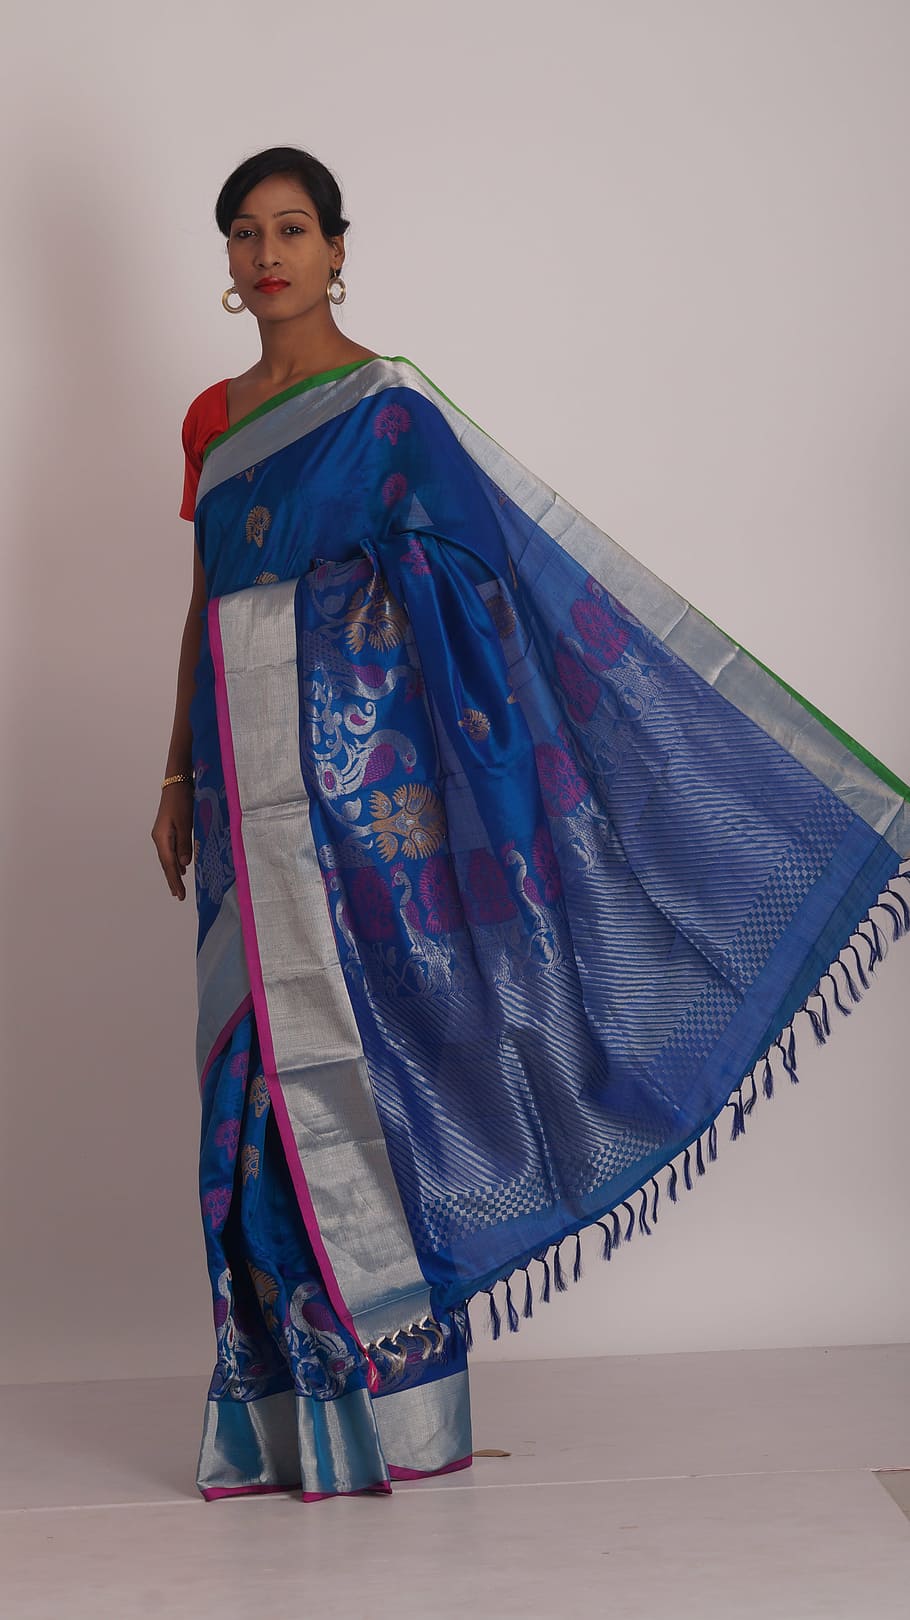 sari, sari warna biru, pakaian wanita, pakaian India, tradisional, satu orang, pakaian tradisional, pakaian, di dalam ruangan, berdiri